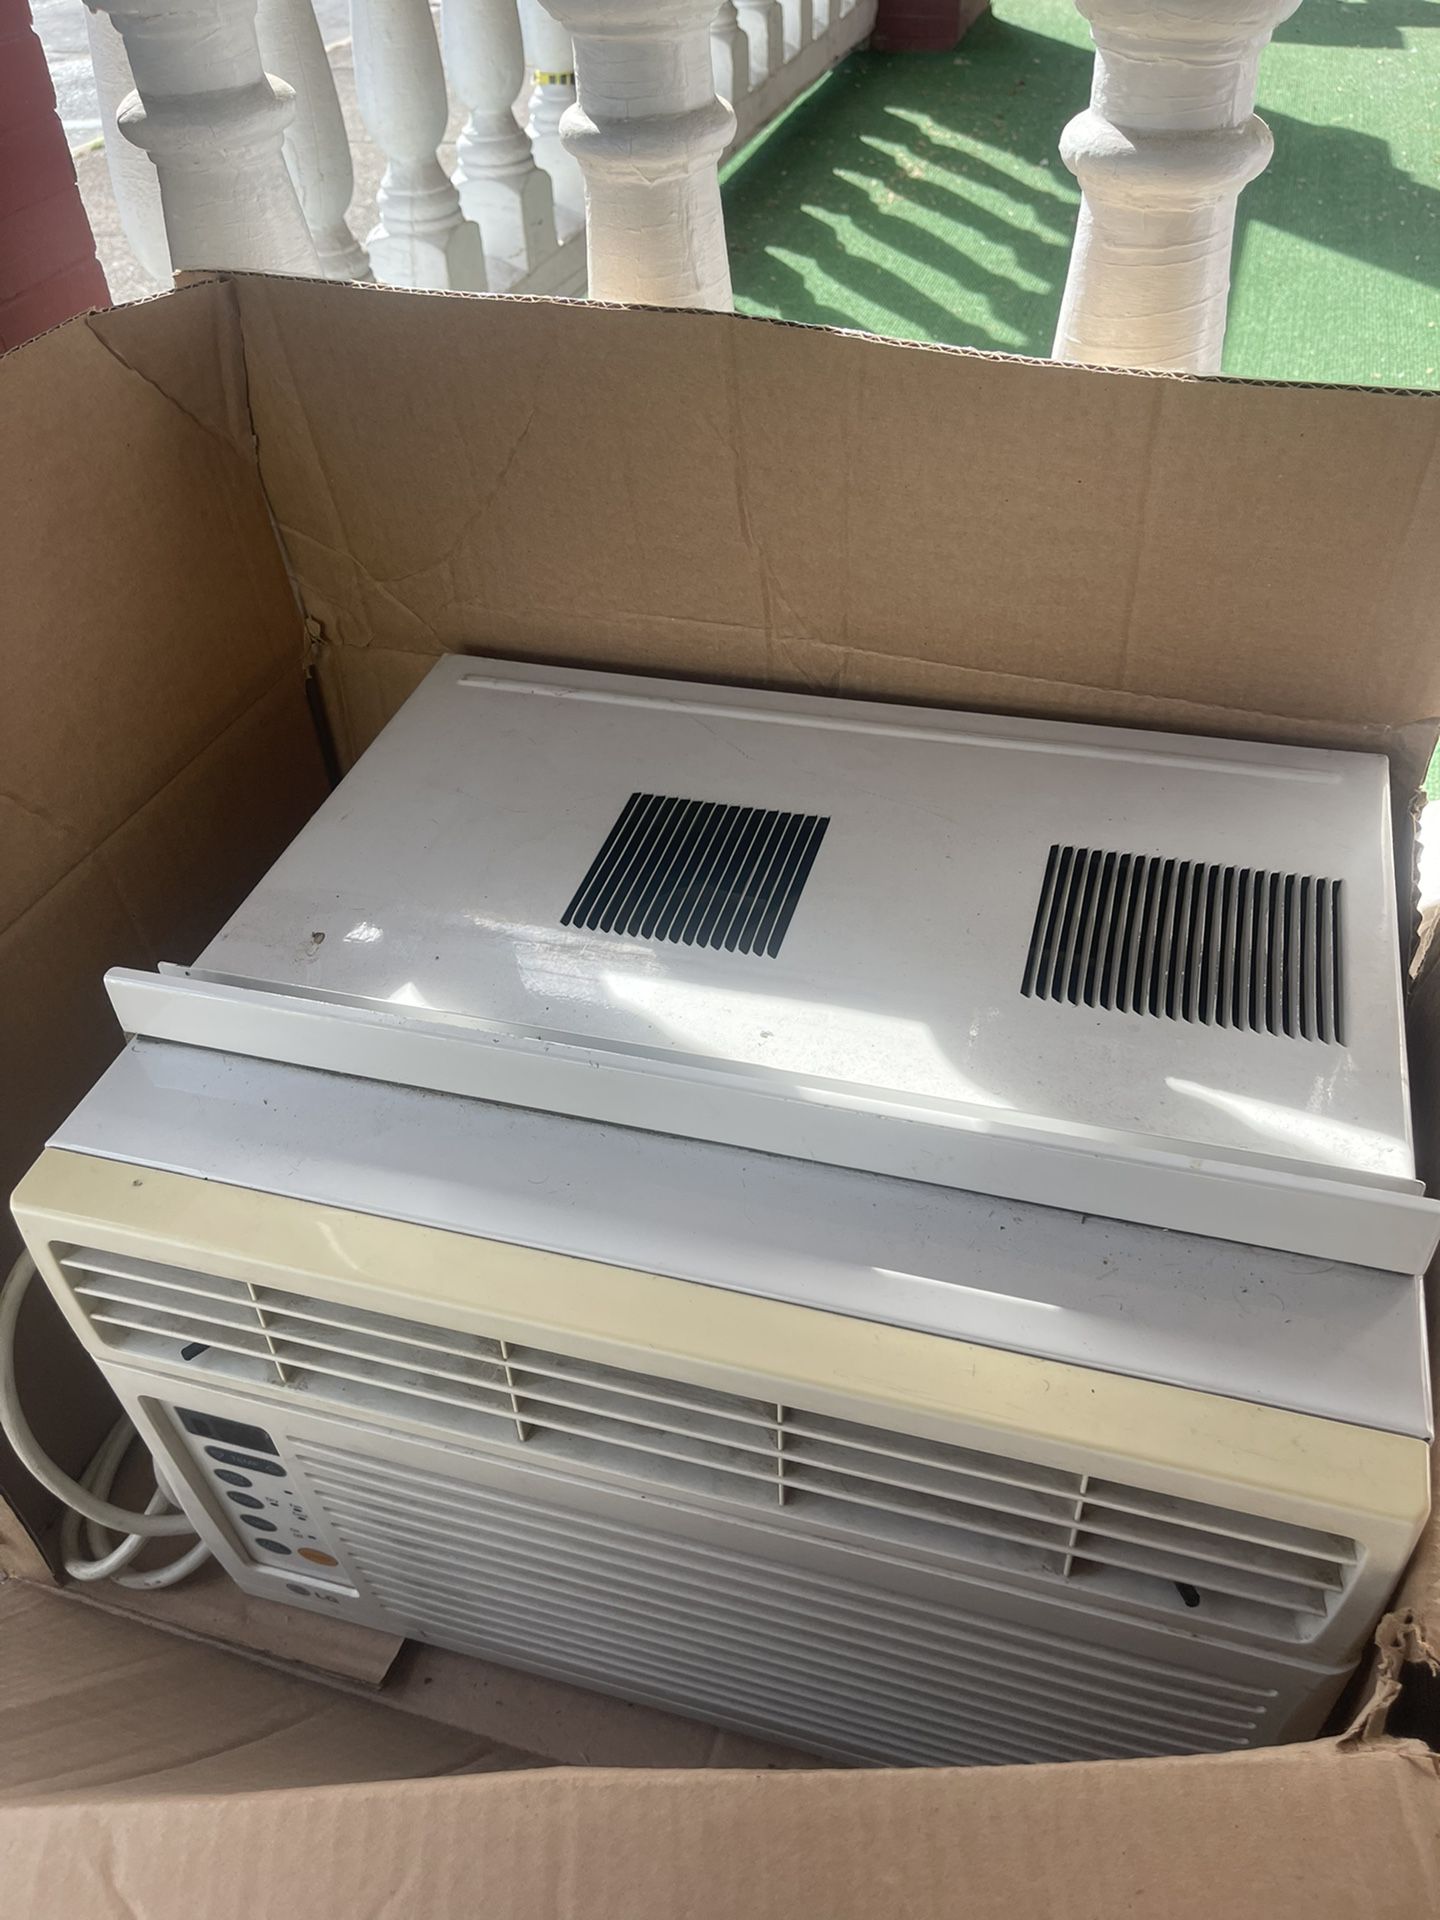 6500 Btu LG Air Conditioner 